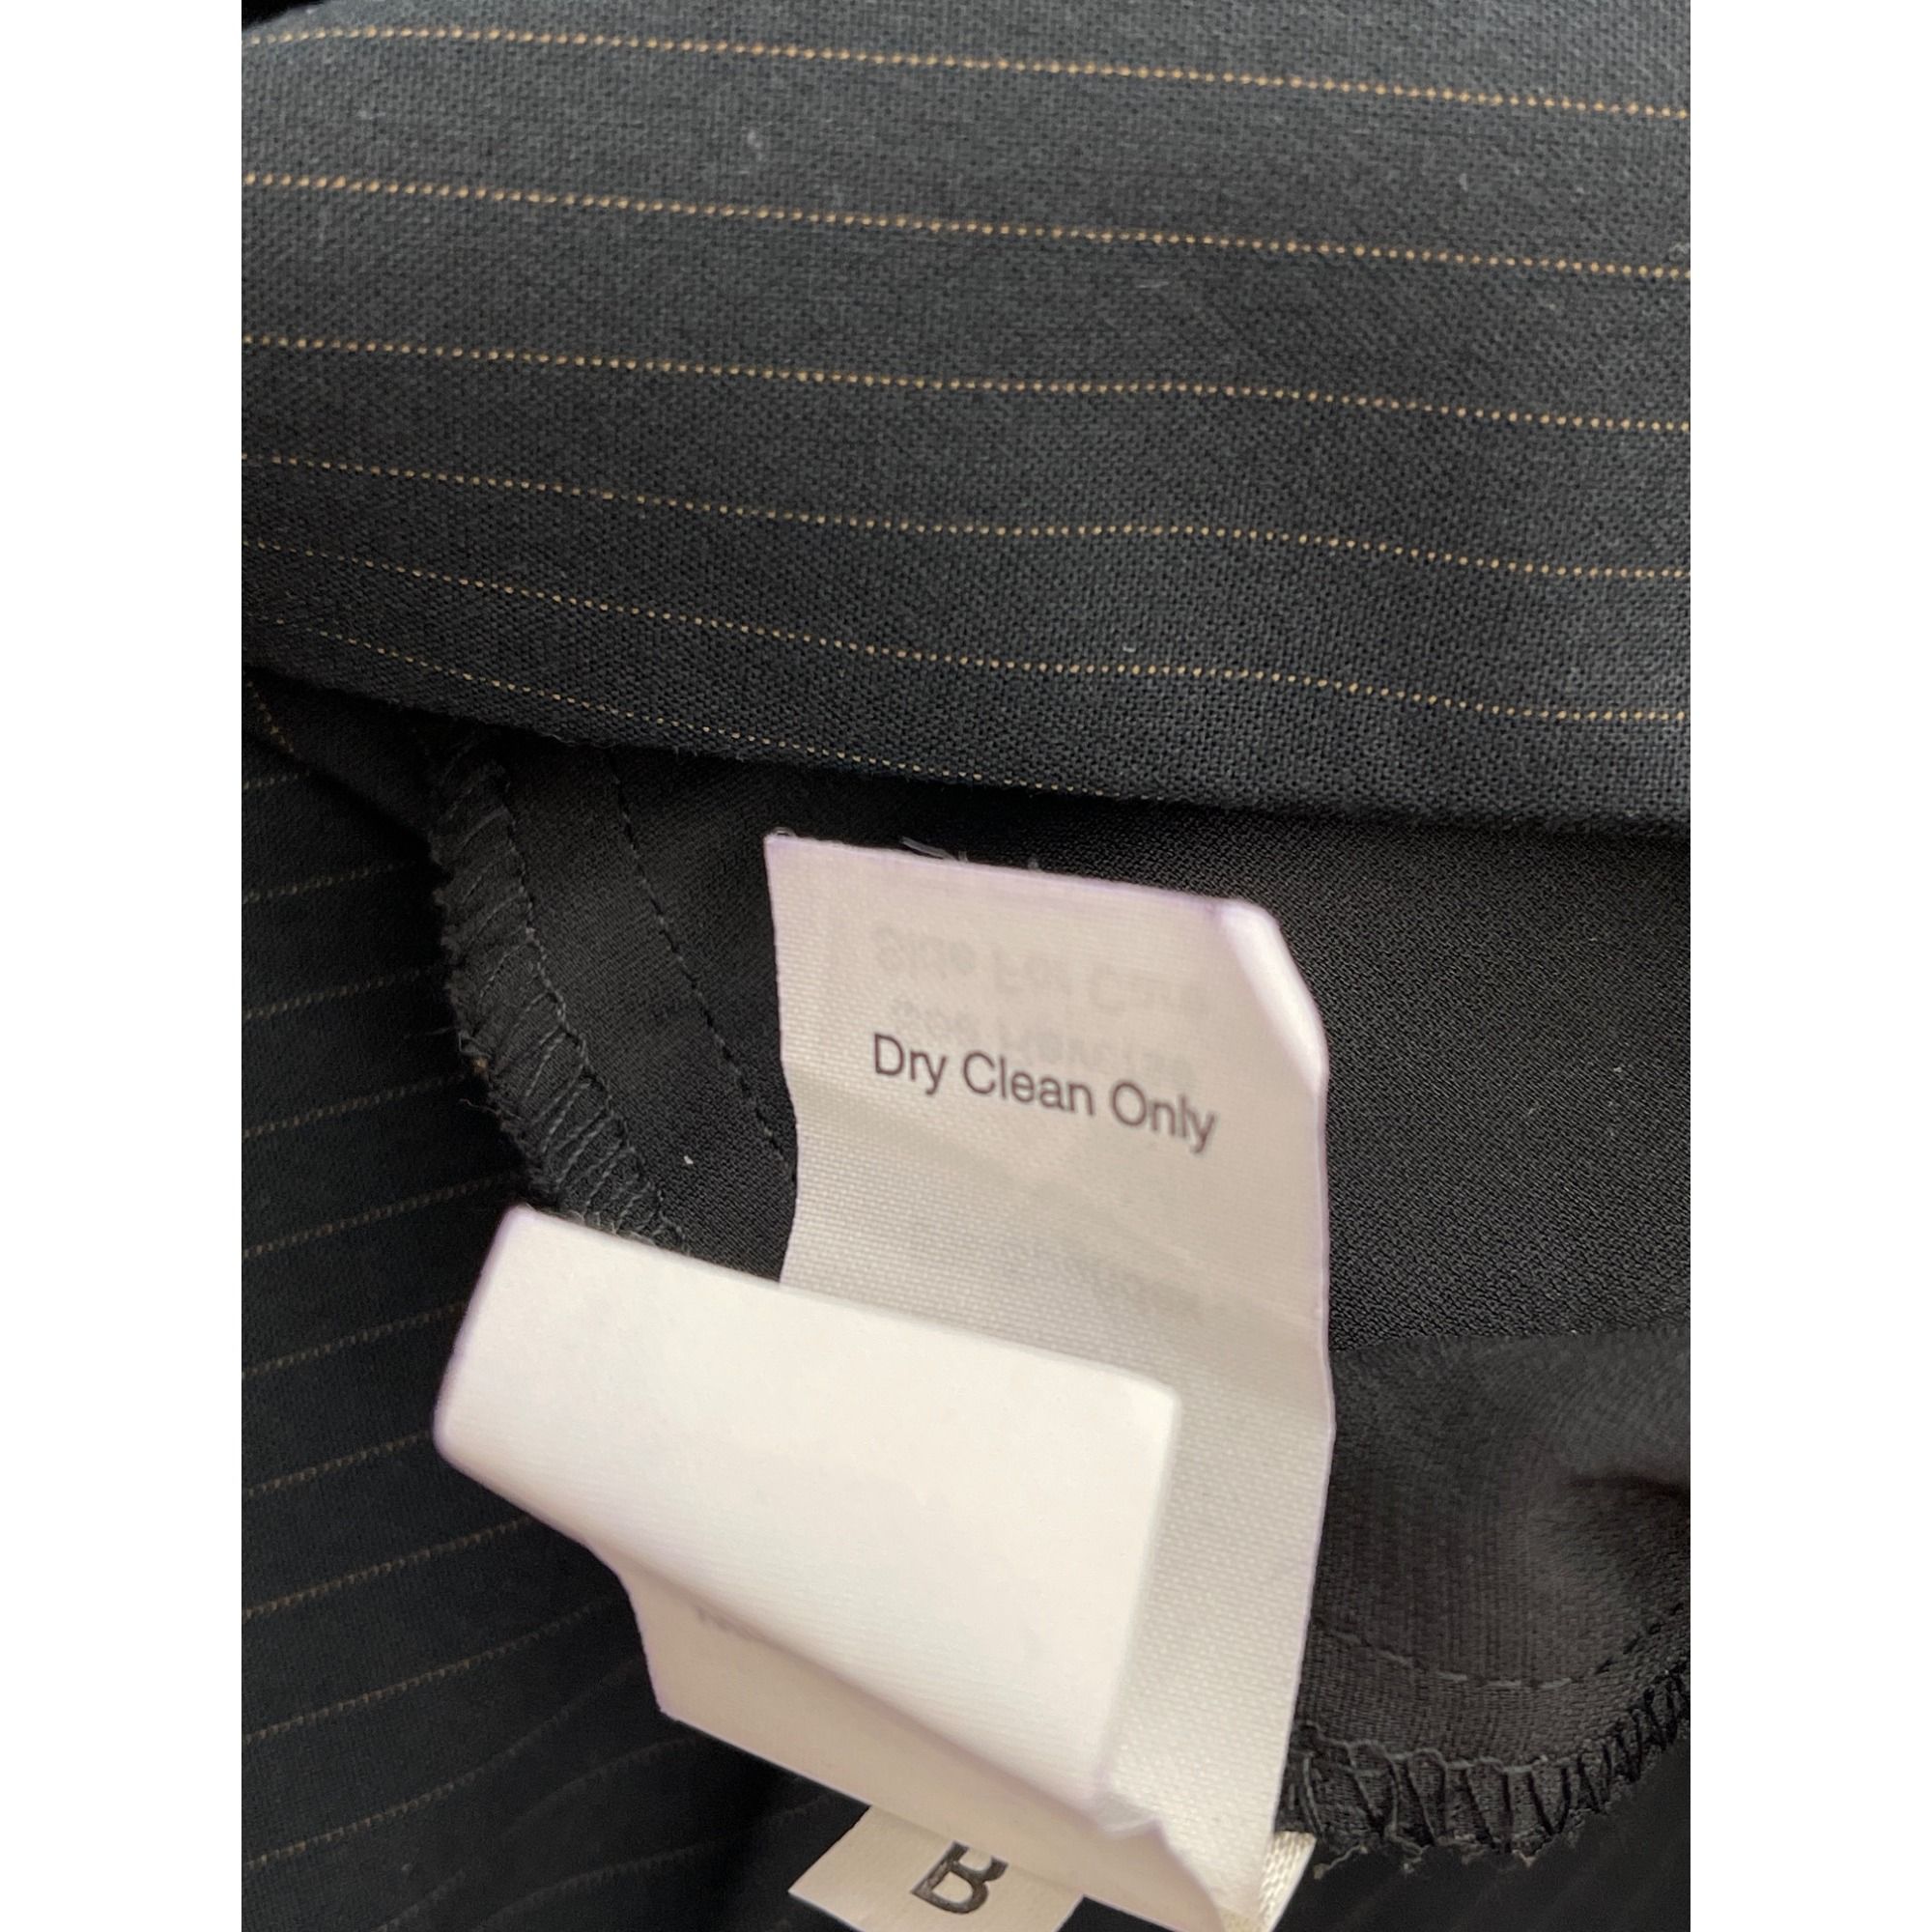 Other Cabi Black Pin Striped Pant 2 Pcs Suit Set Jacket 4 Pant 6 Size S / US 4 / IT 40 - 14 Preview